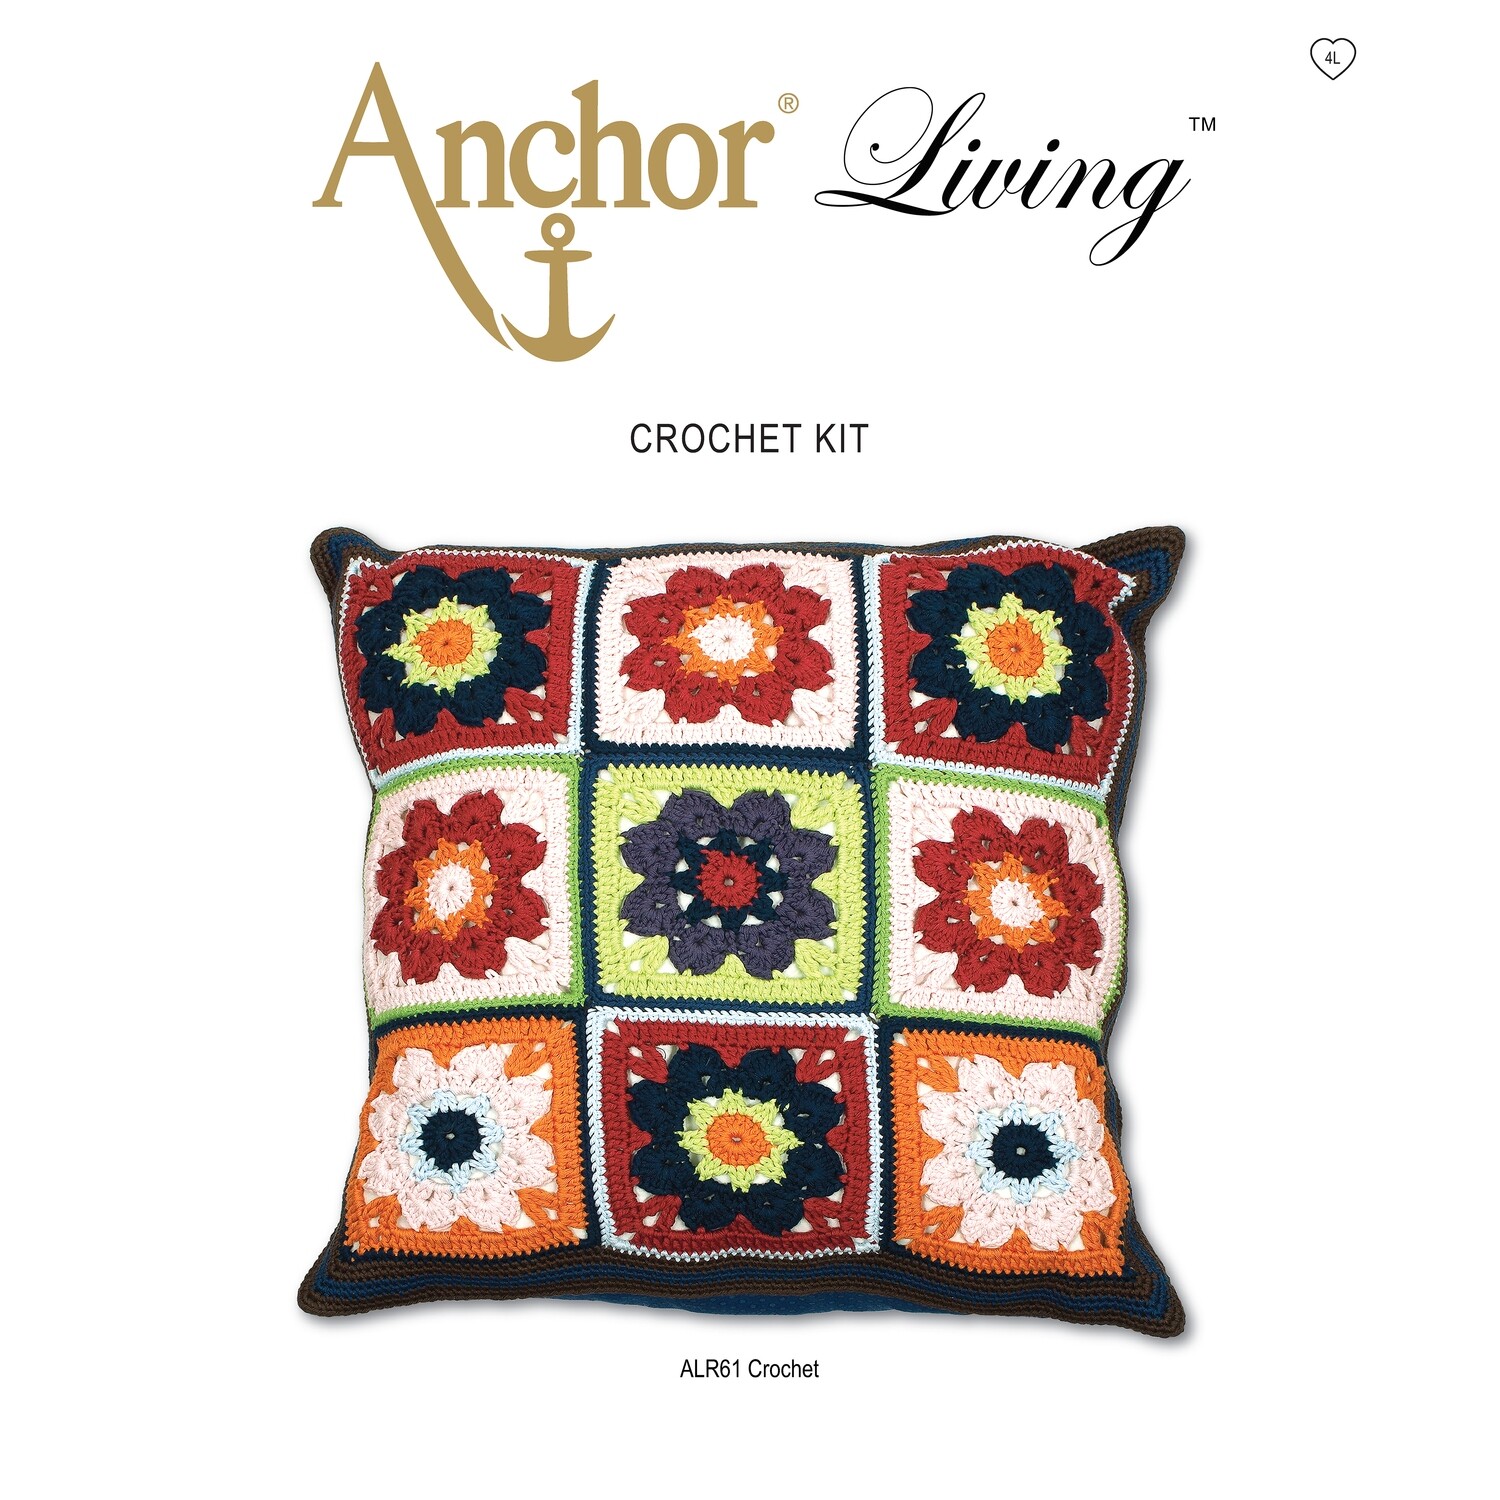 Anchor Living Kit Crochet Kit - Crochet Cushion